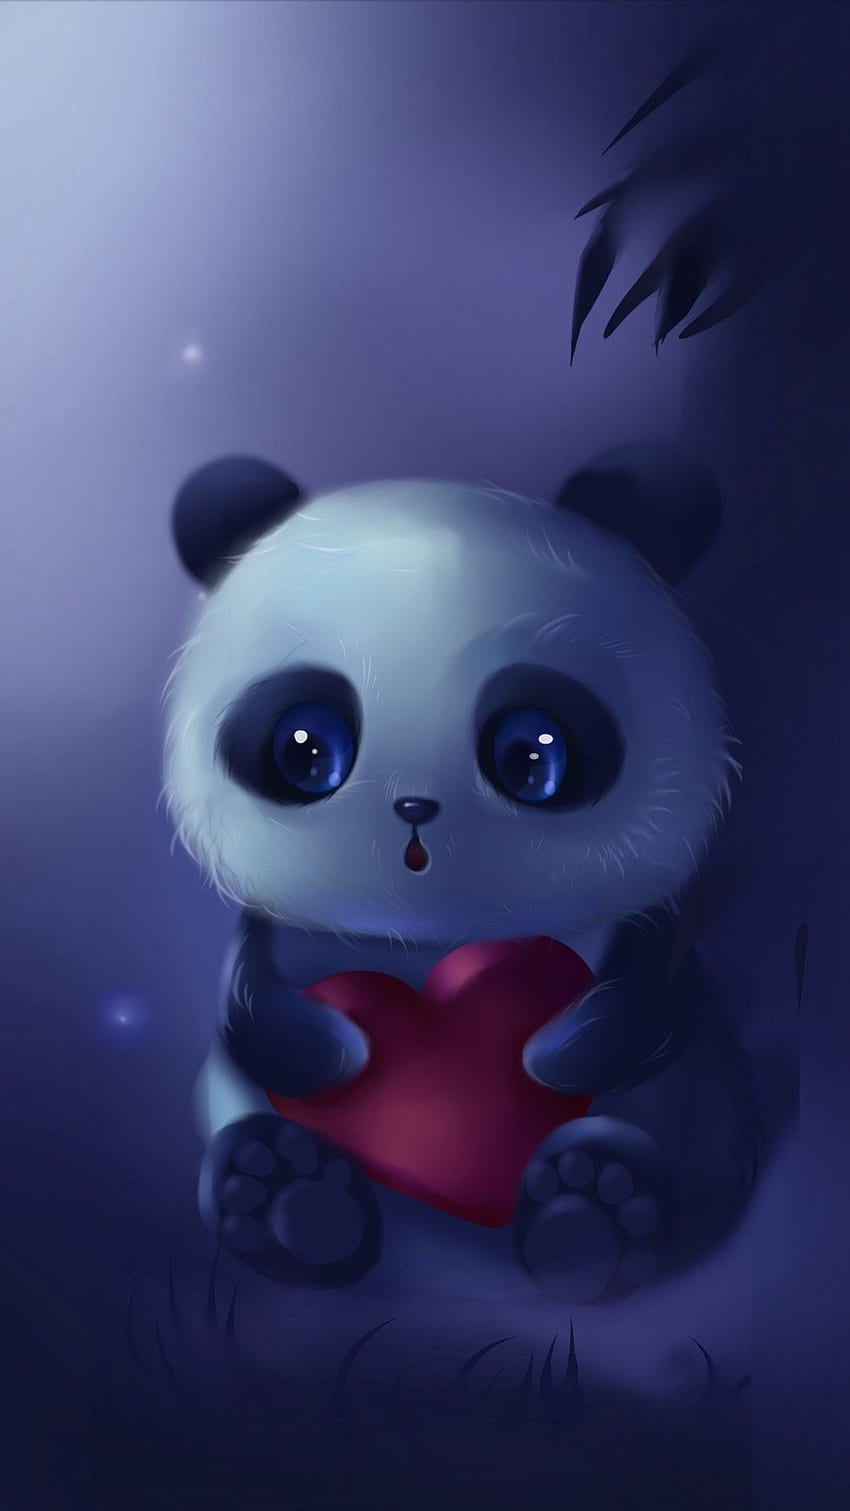 cute pandas cartoon wallpaper